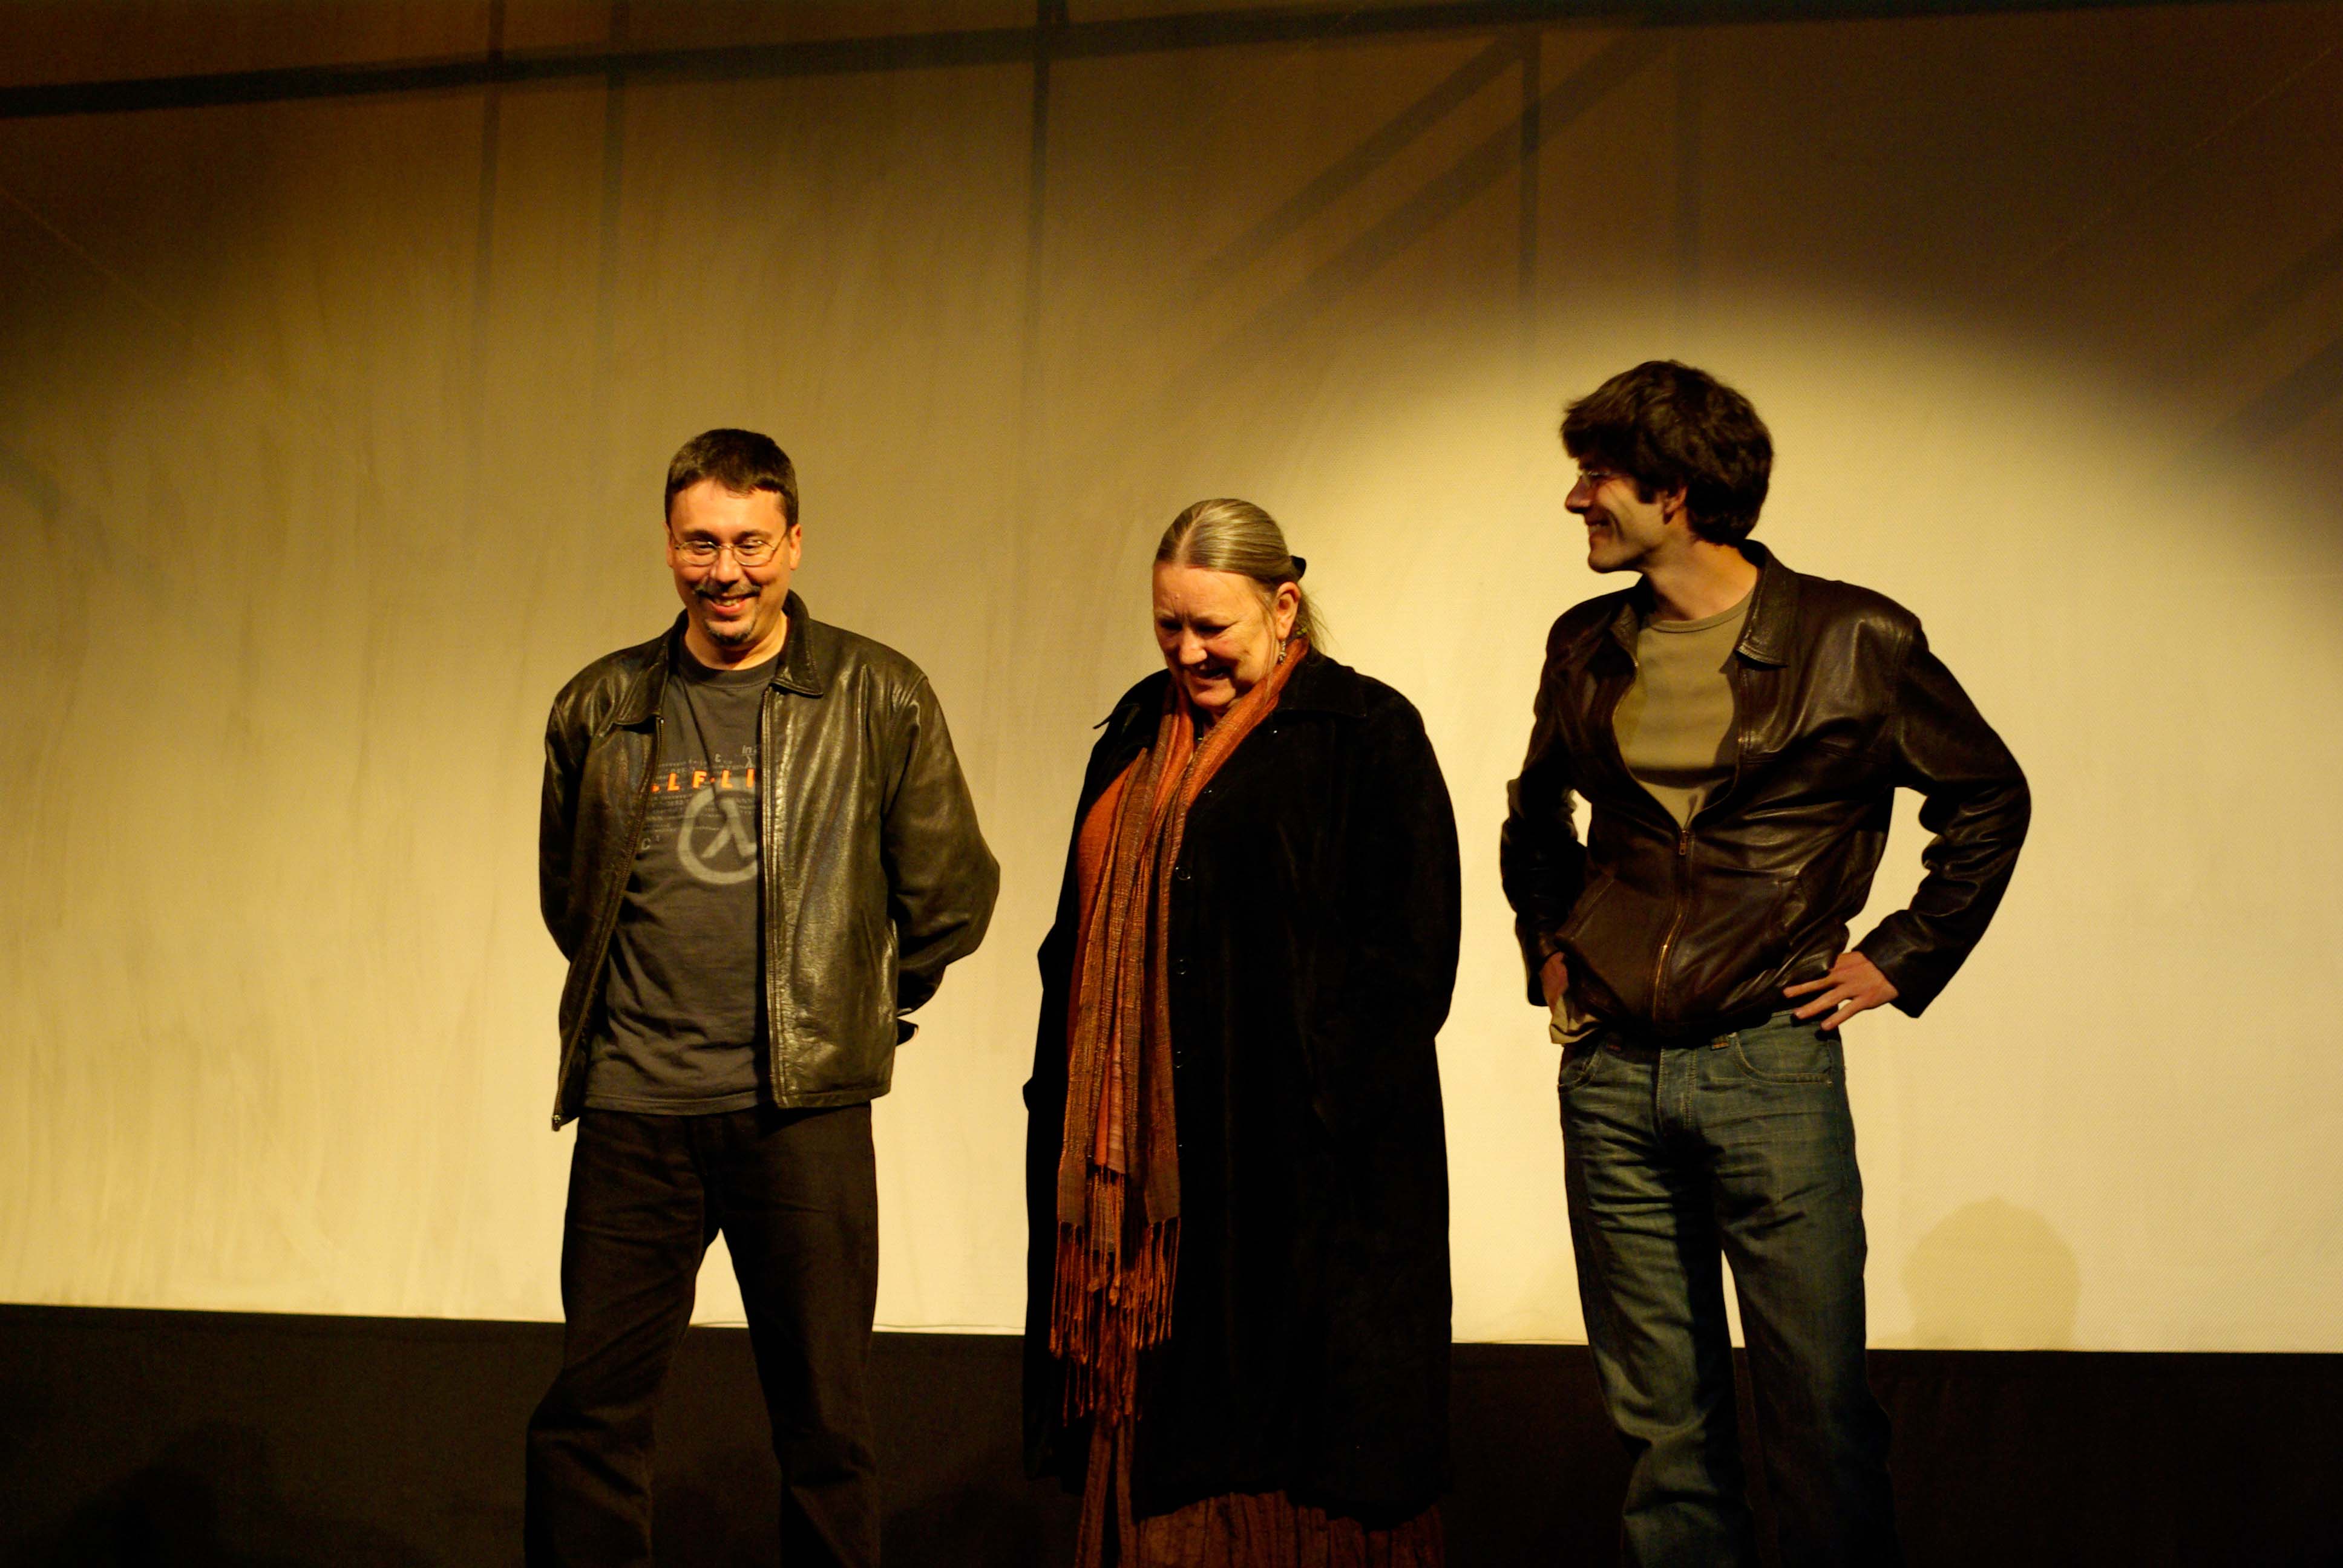 Tetouan Film Festival, with Margaret Nicoll and Julio Perillán, 2010